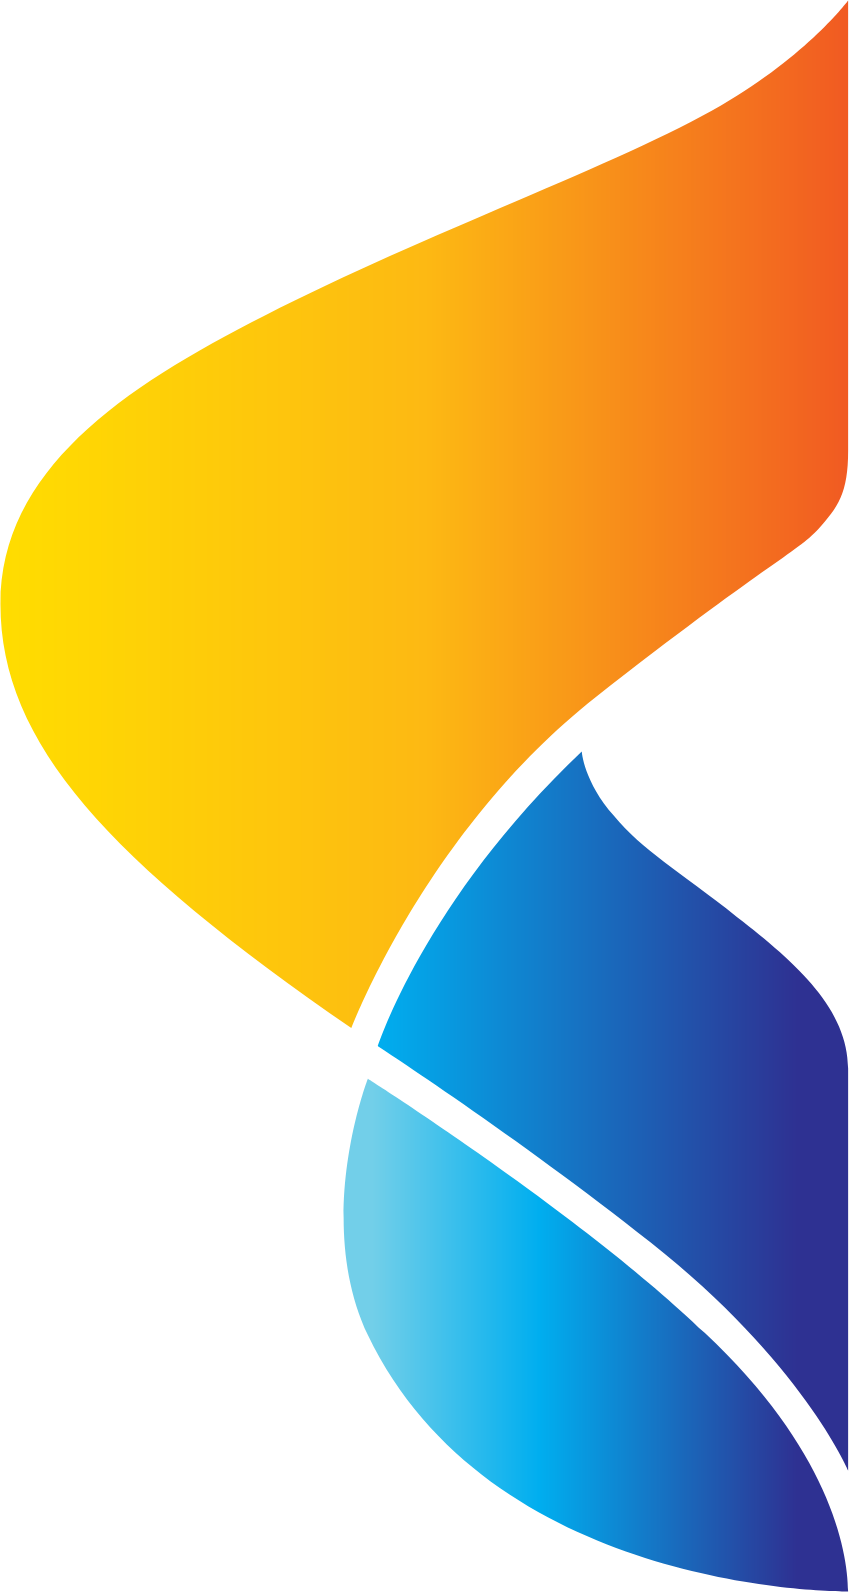 Thai Union Group logo (transparent PNG)